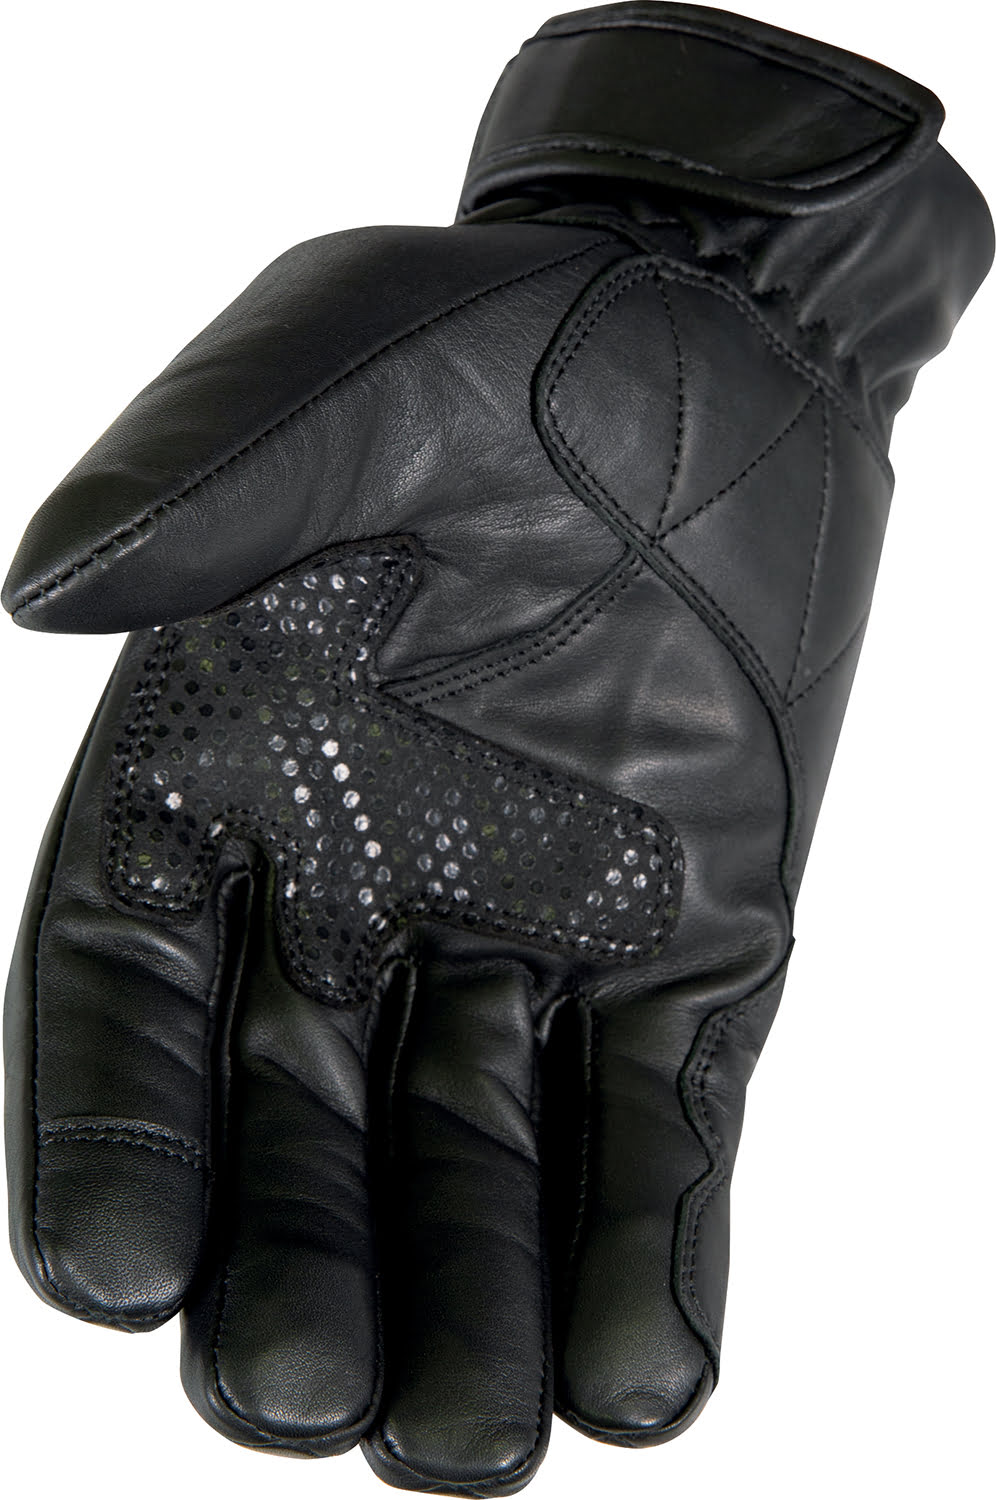 Gloves DAKAR 2.0 Black STORMER 